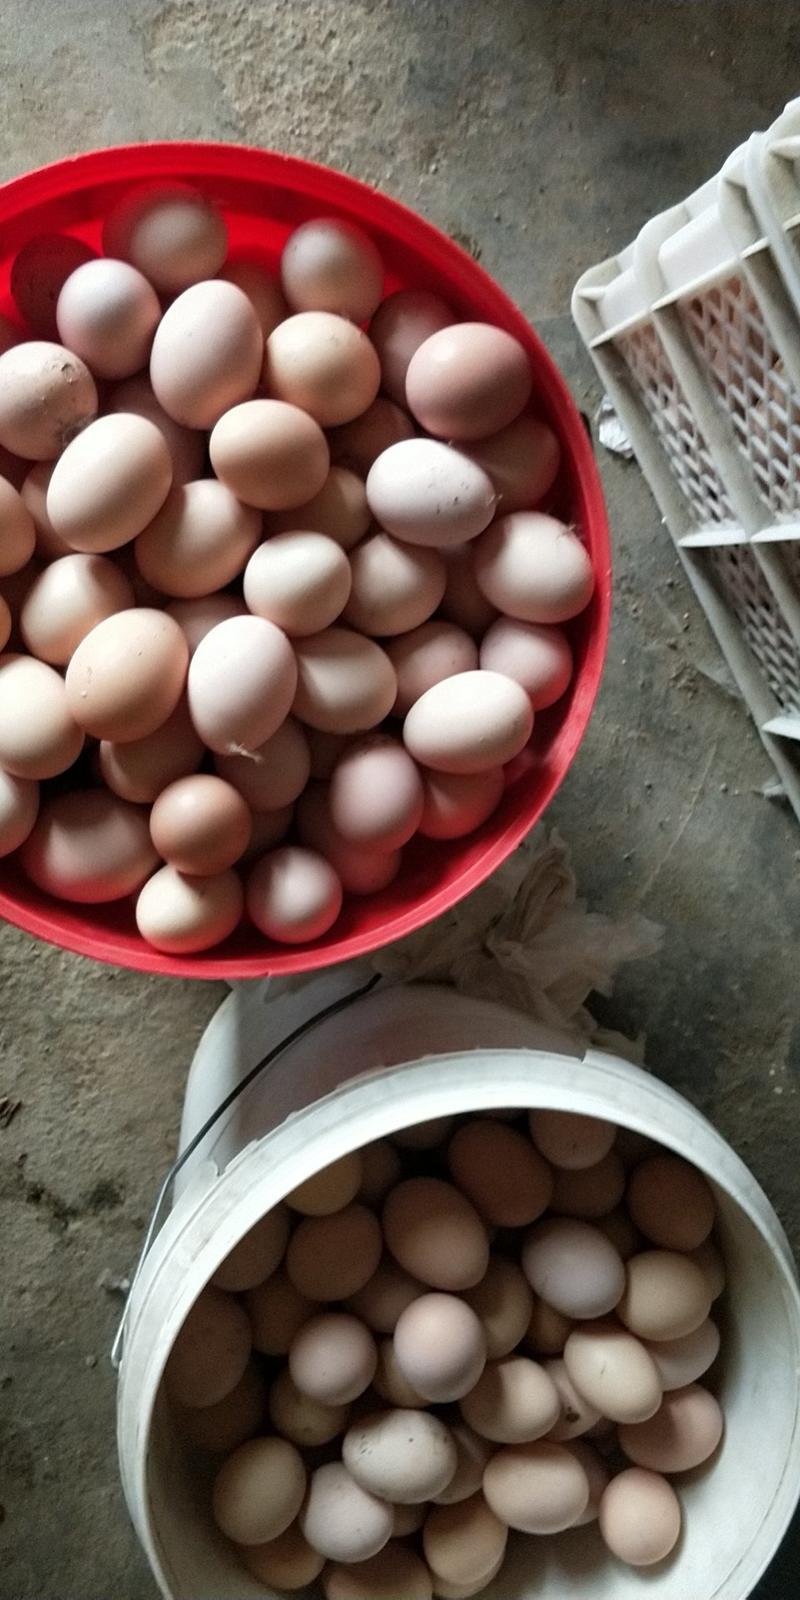 青脚鸡种蛋土鸡种蛋瑶鸡种提供技术保障受精率90%